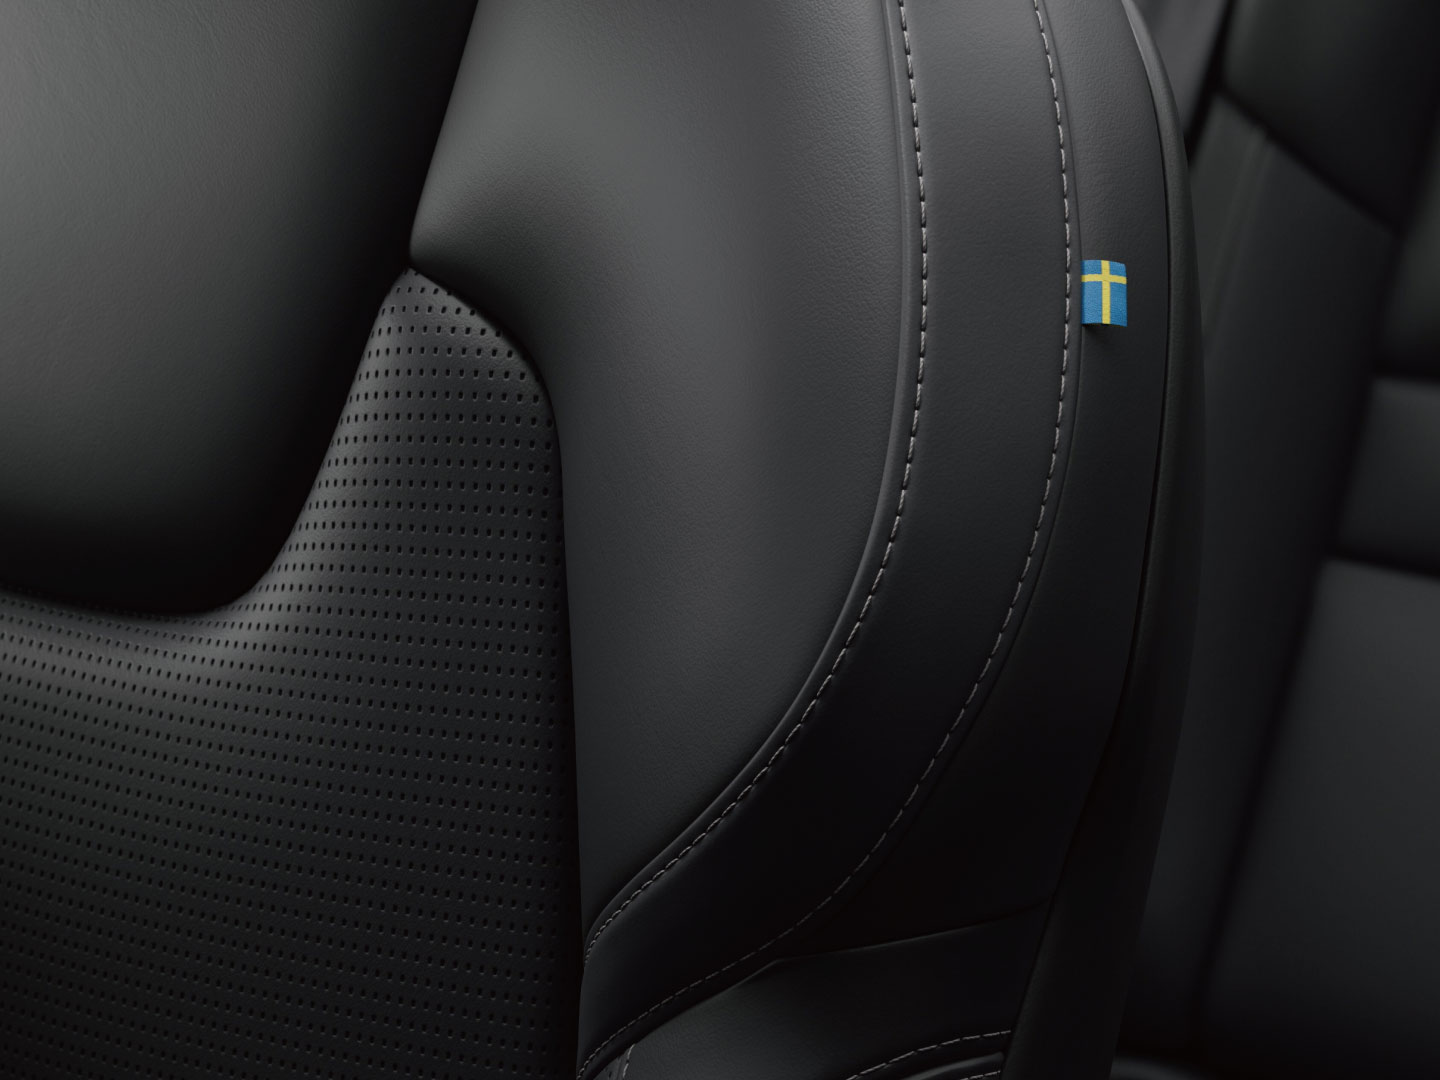 Volvo S60 Recharge 量身訂製的無皮革羊毛混紡座椅特寫。